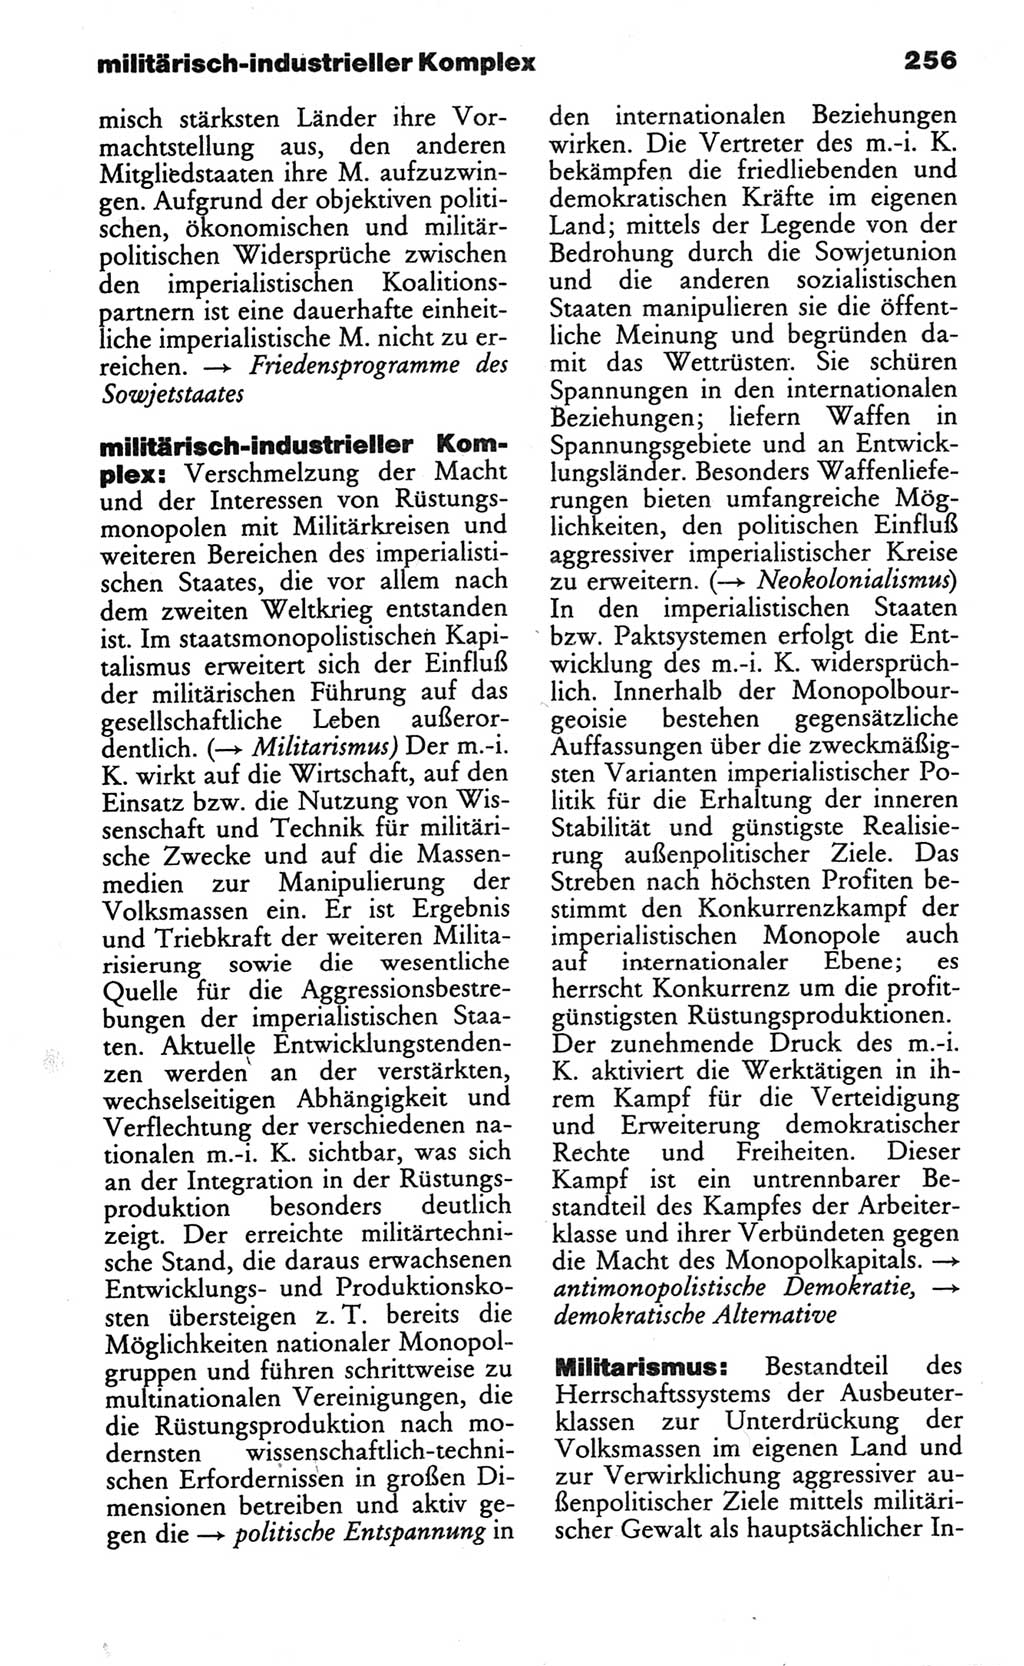 Wörterbuch des wissenschaftlichen Kommunismus [Deutsche Demokratische Republik (DDR)] 1982, Seite 256 (Wb. wiss. Komm. DDR 1982, S. 256)